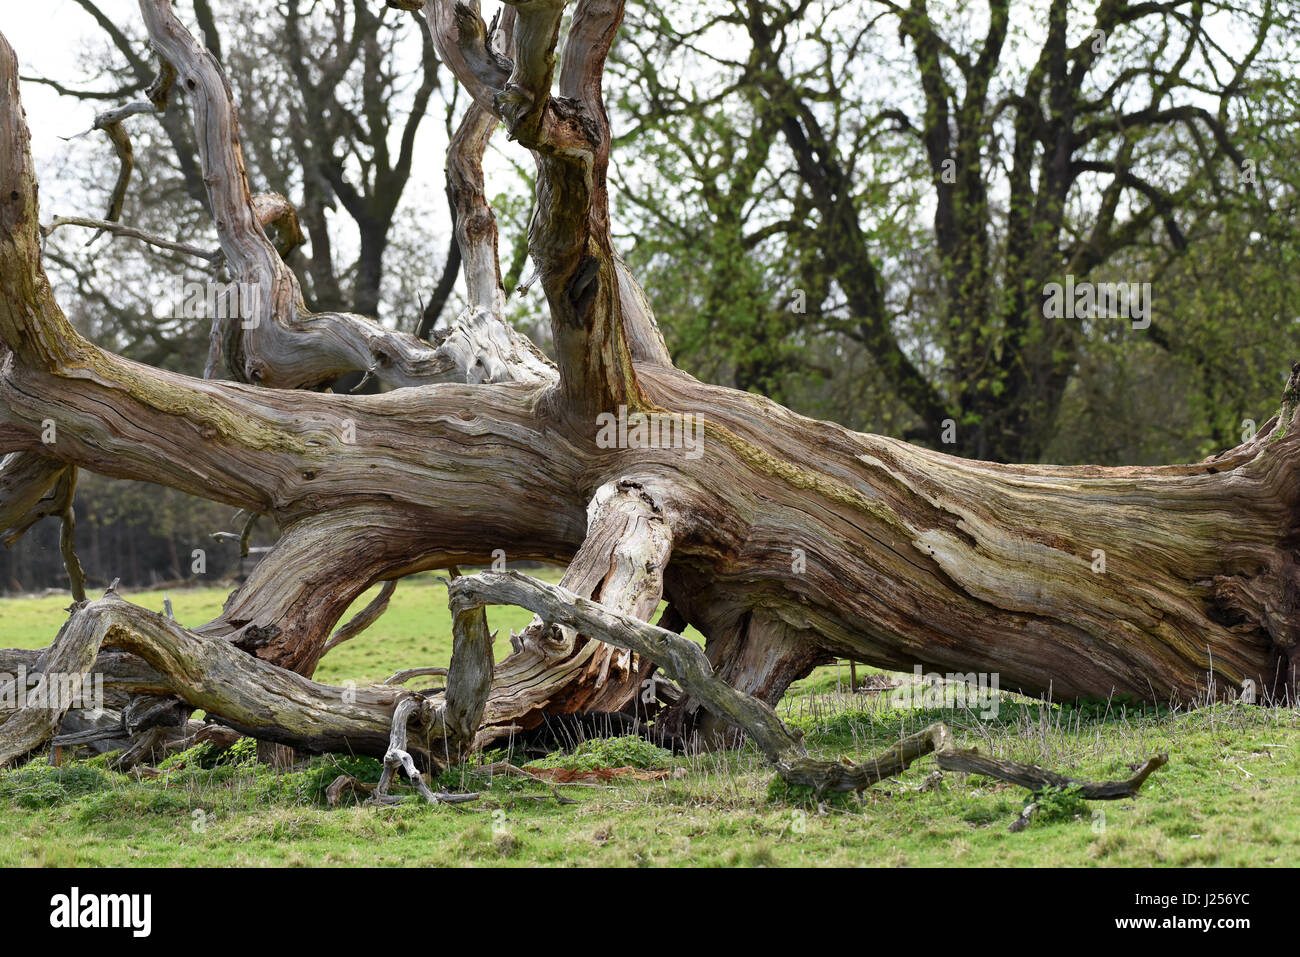 Tot umgestürzten Baum verrotten auf Erden Großbritannien Uk Stockfoto